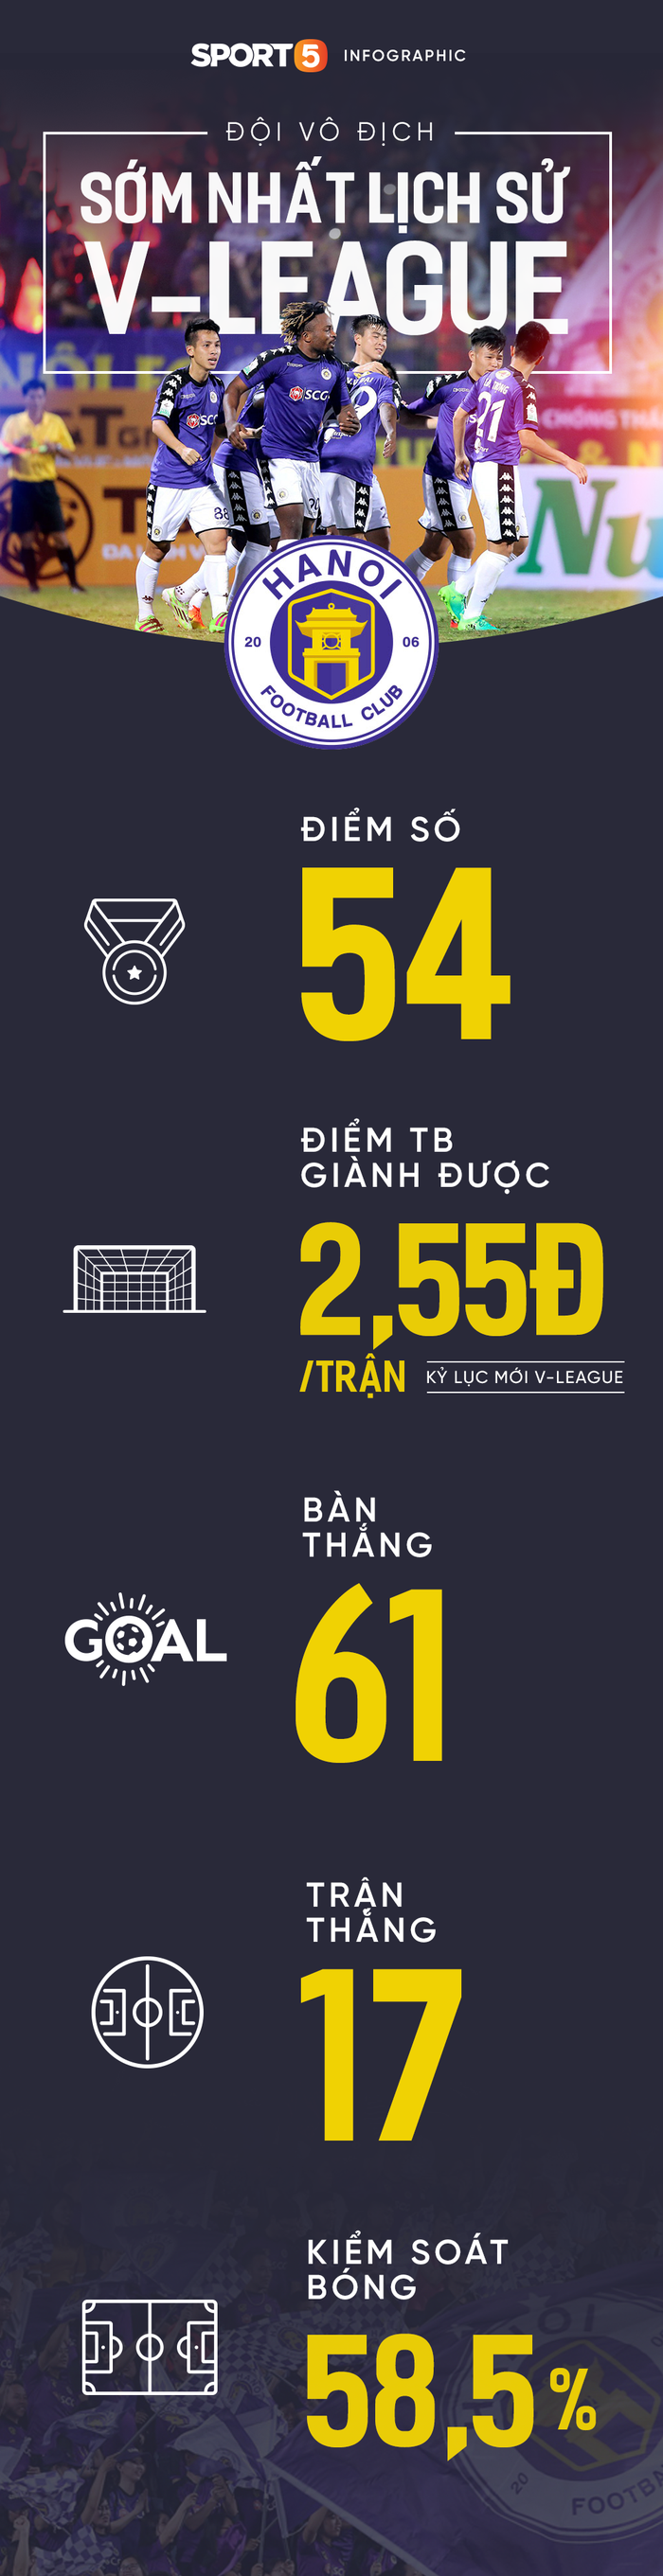 3 kỷ lục V.League chờ Hà Nội FC phá vỡ - Ảnh 1.